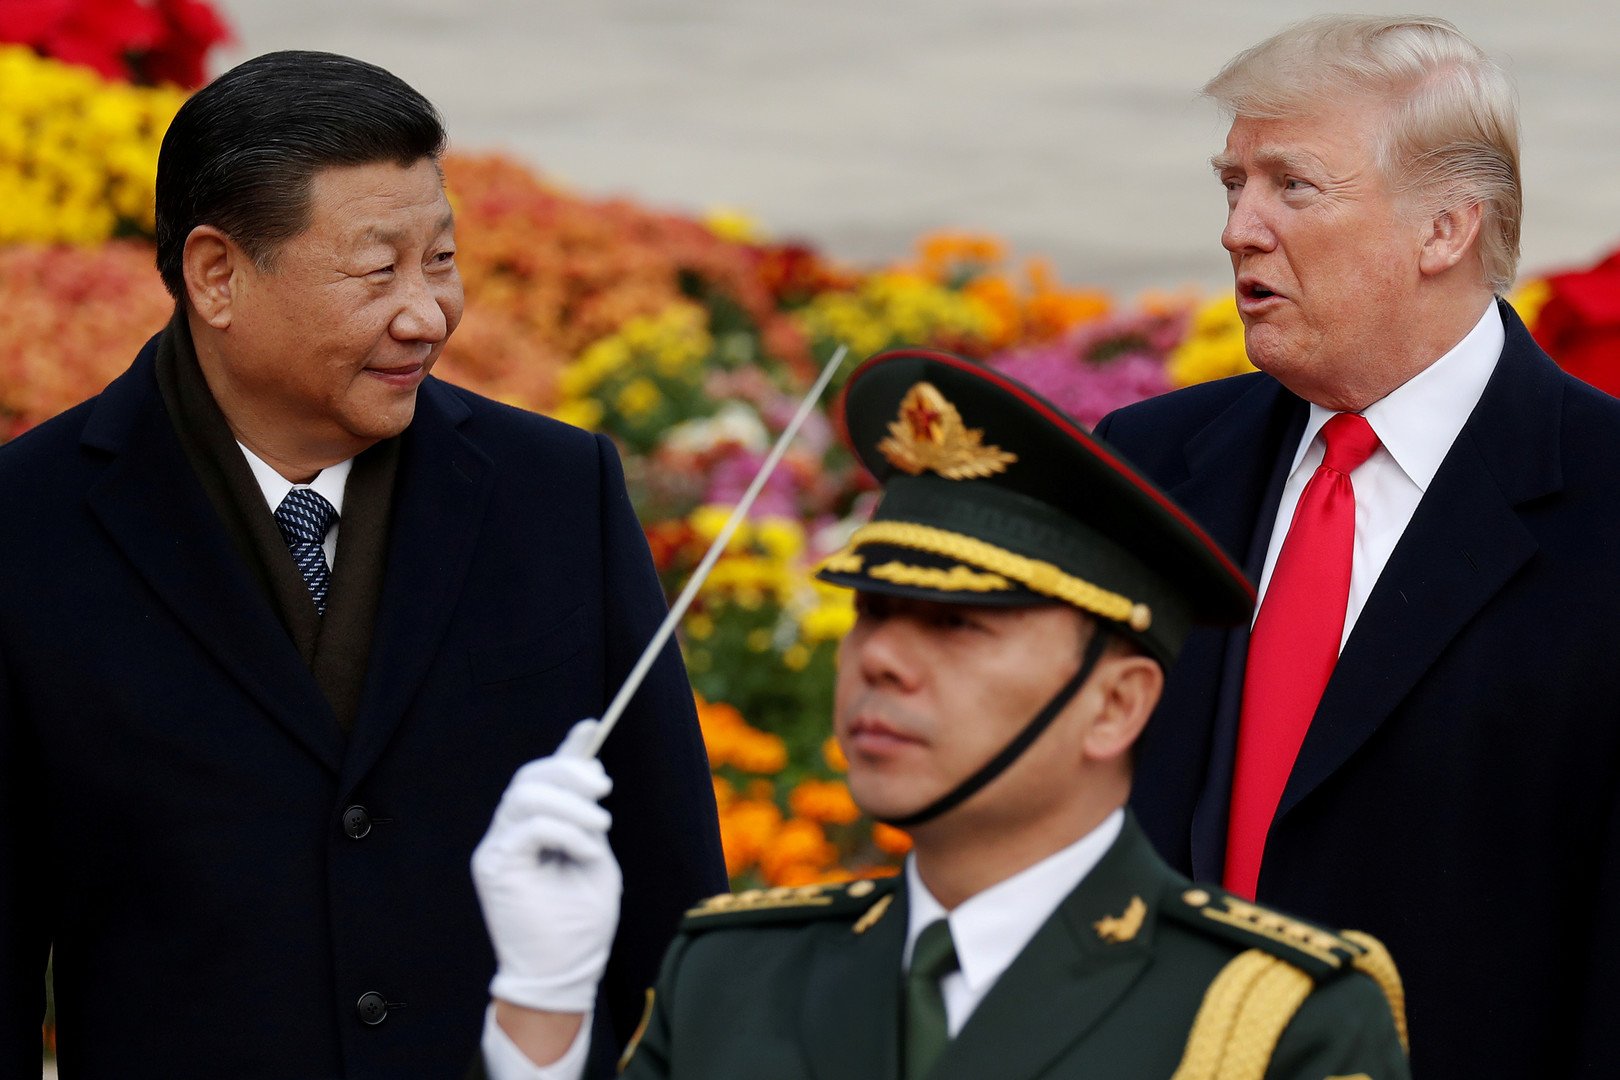 في رسالة مبطنة للأمريكيين الرئيس الصيني يتفقد عصبا حيويا يهم واشنطن